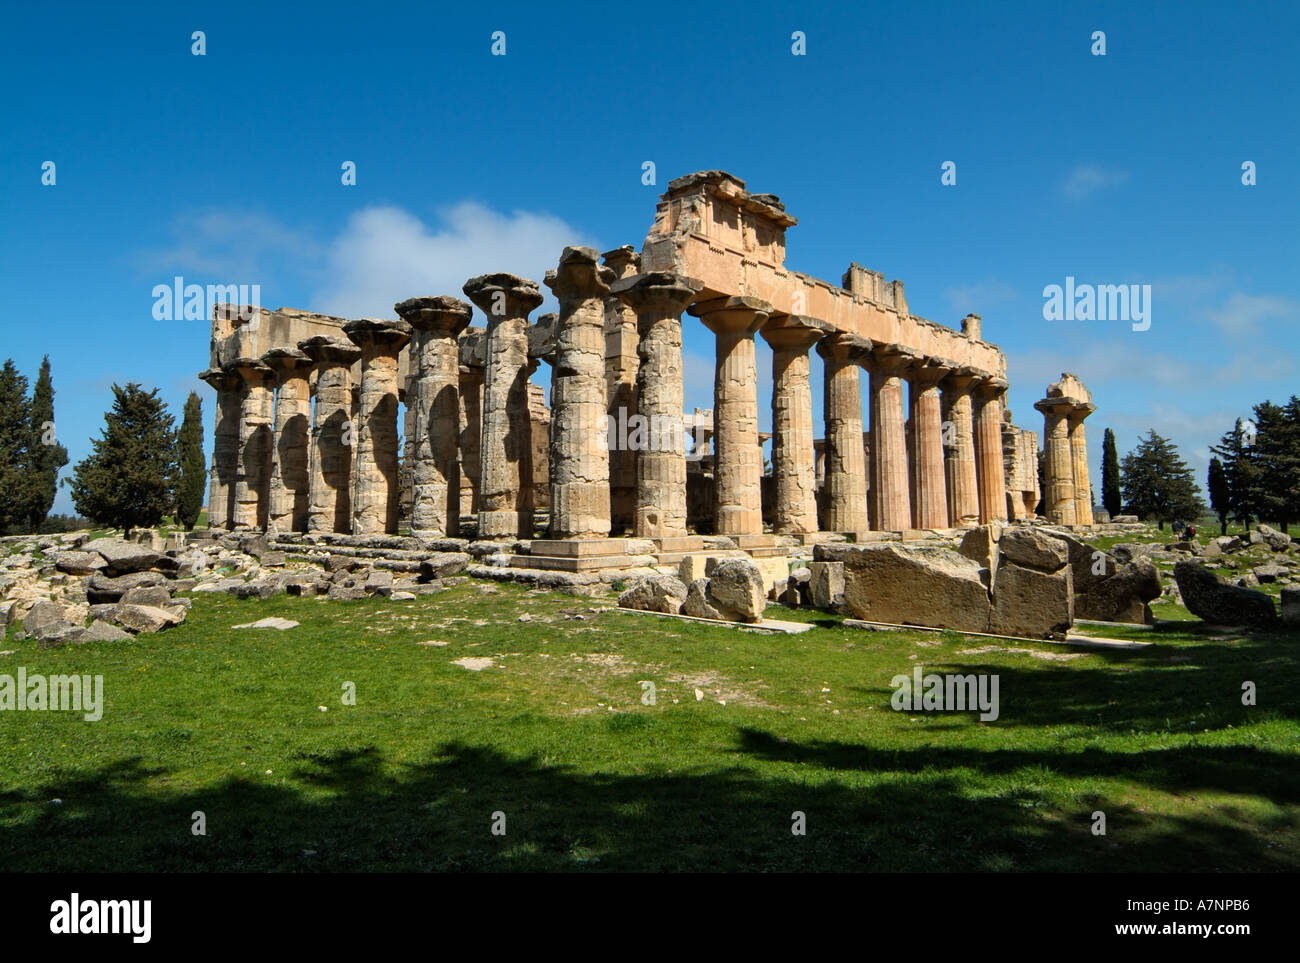 Temple de Zeus, Cyrène, Grec / Roman ruins, Libye Banque D'Images